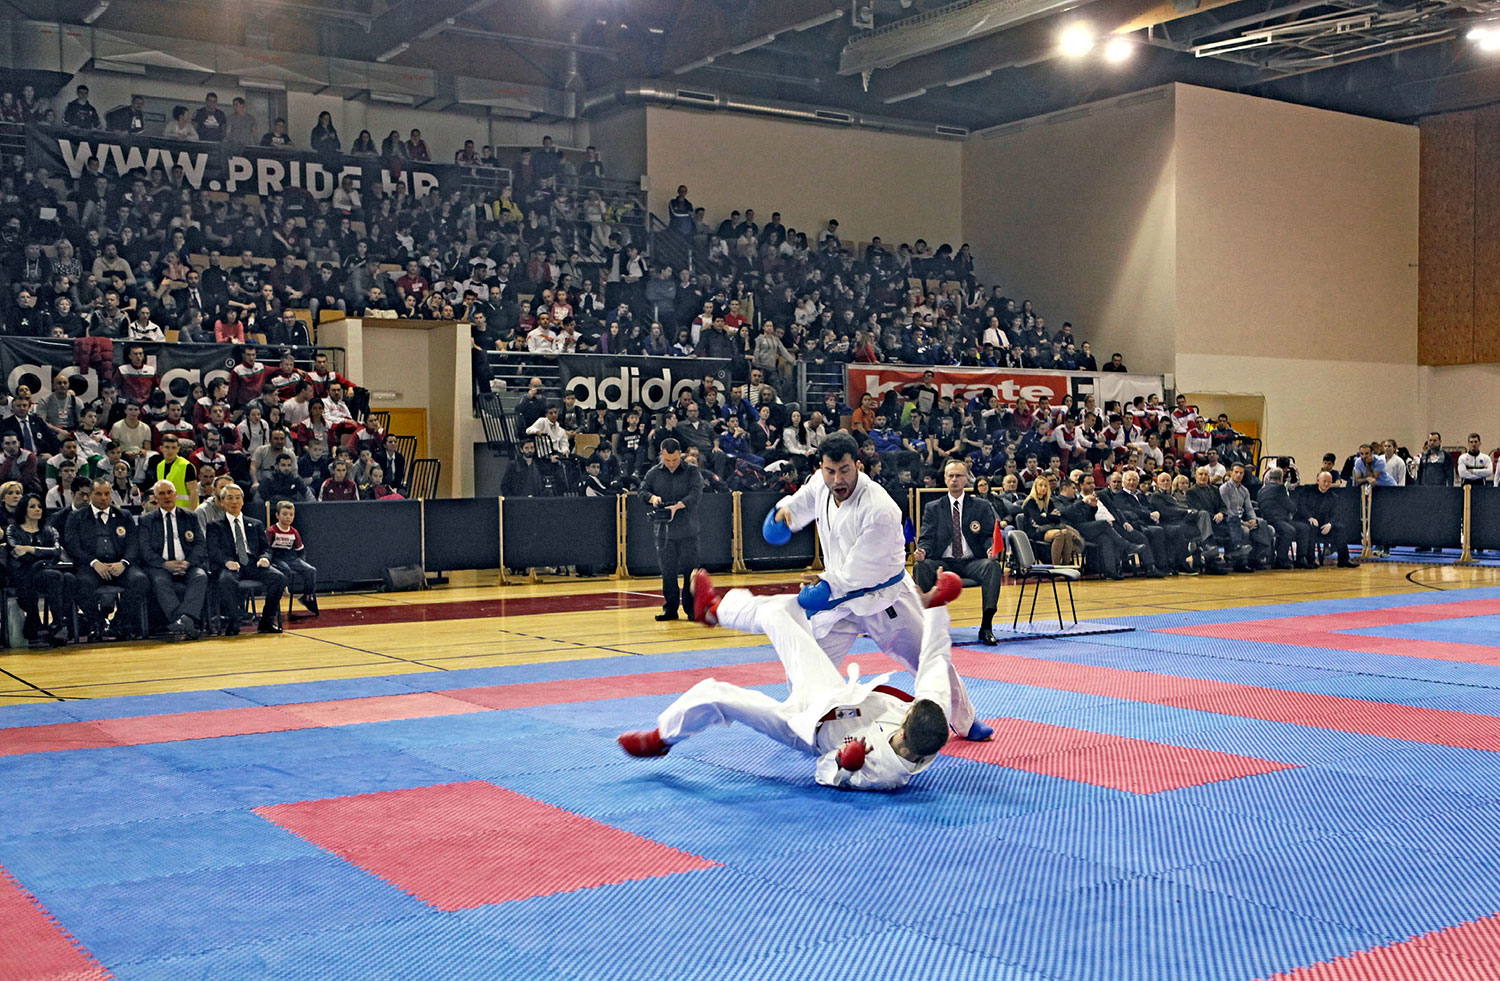 Meunarodni karate turnir Grand Prix Croatia - Samobor, 18. - 20. oujka